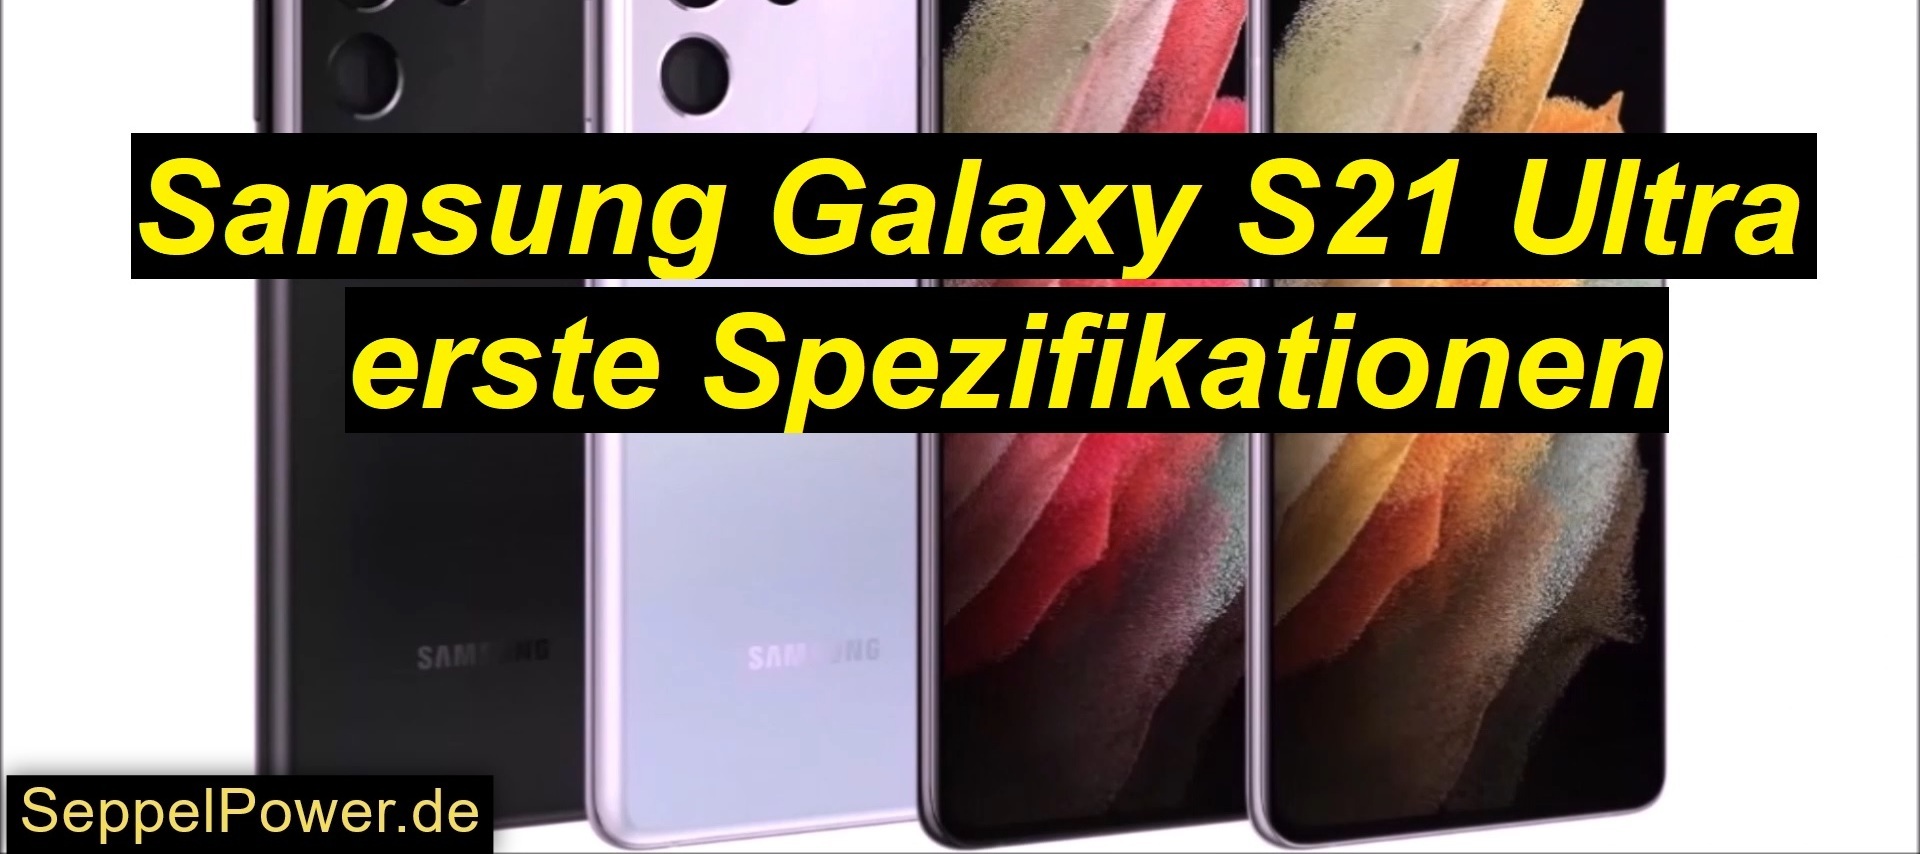 Samsung Galaxy S21 Ultra: erste Spezifikationen